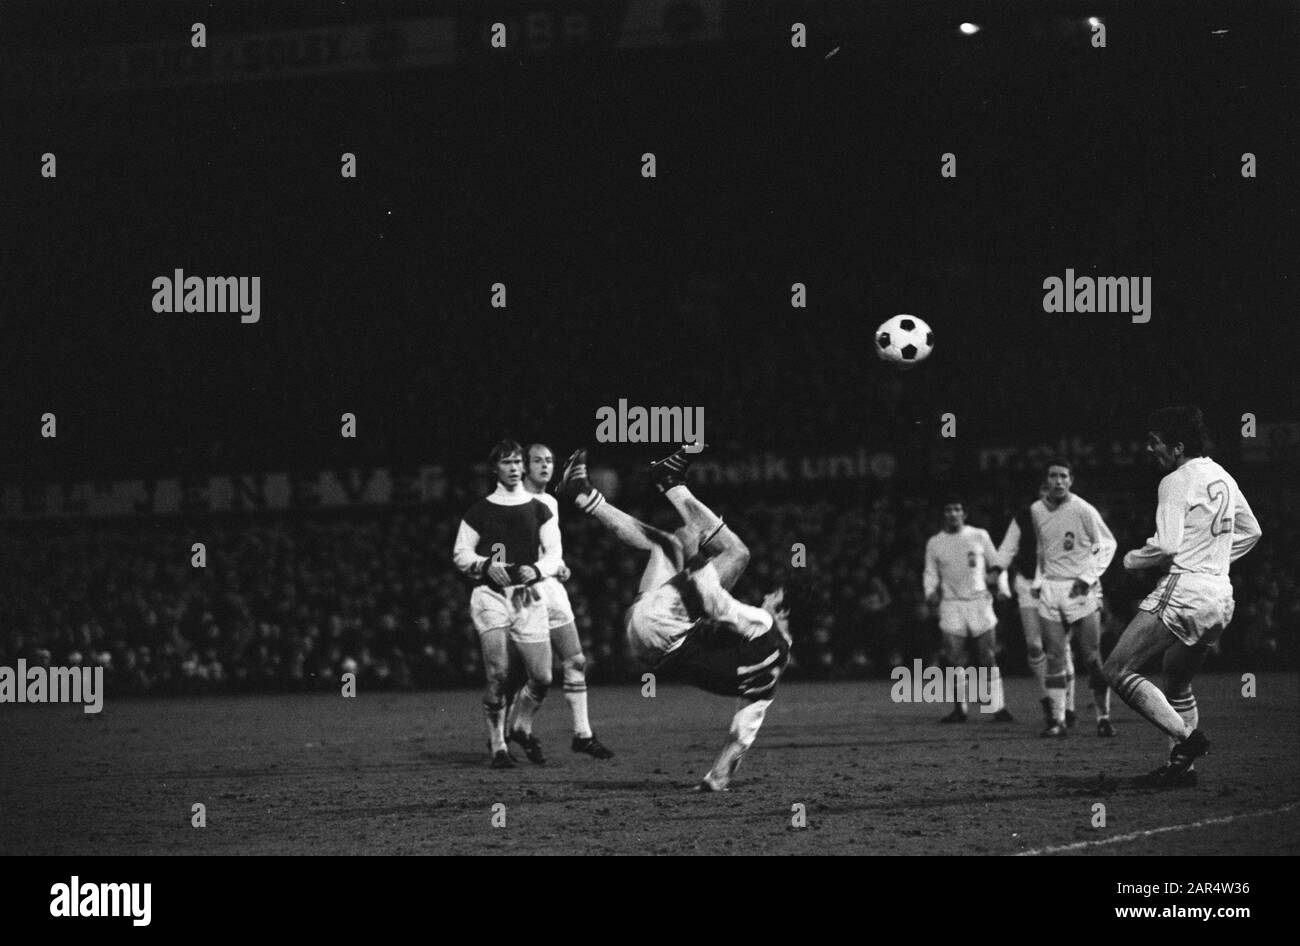 Feyenoord Against Go Ahead 0-0 Wim van Hanegem in Aktion Datum: 28. März 1970 Schlüsselwörter: Sport, Fußball Persönlicher Name: Hanegem, William Institutioneller Name: Feyenoord, Schieß Voran Stockfoto